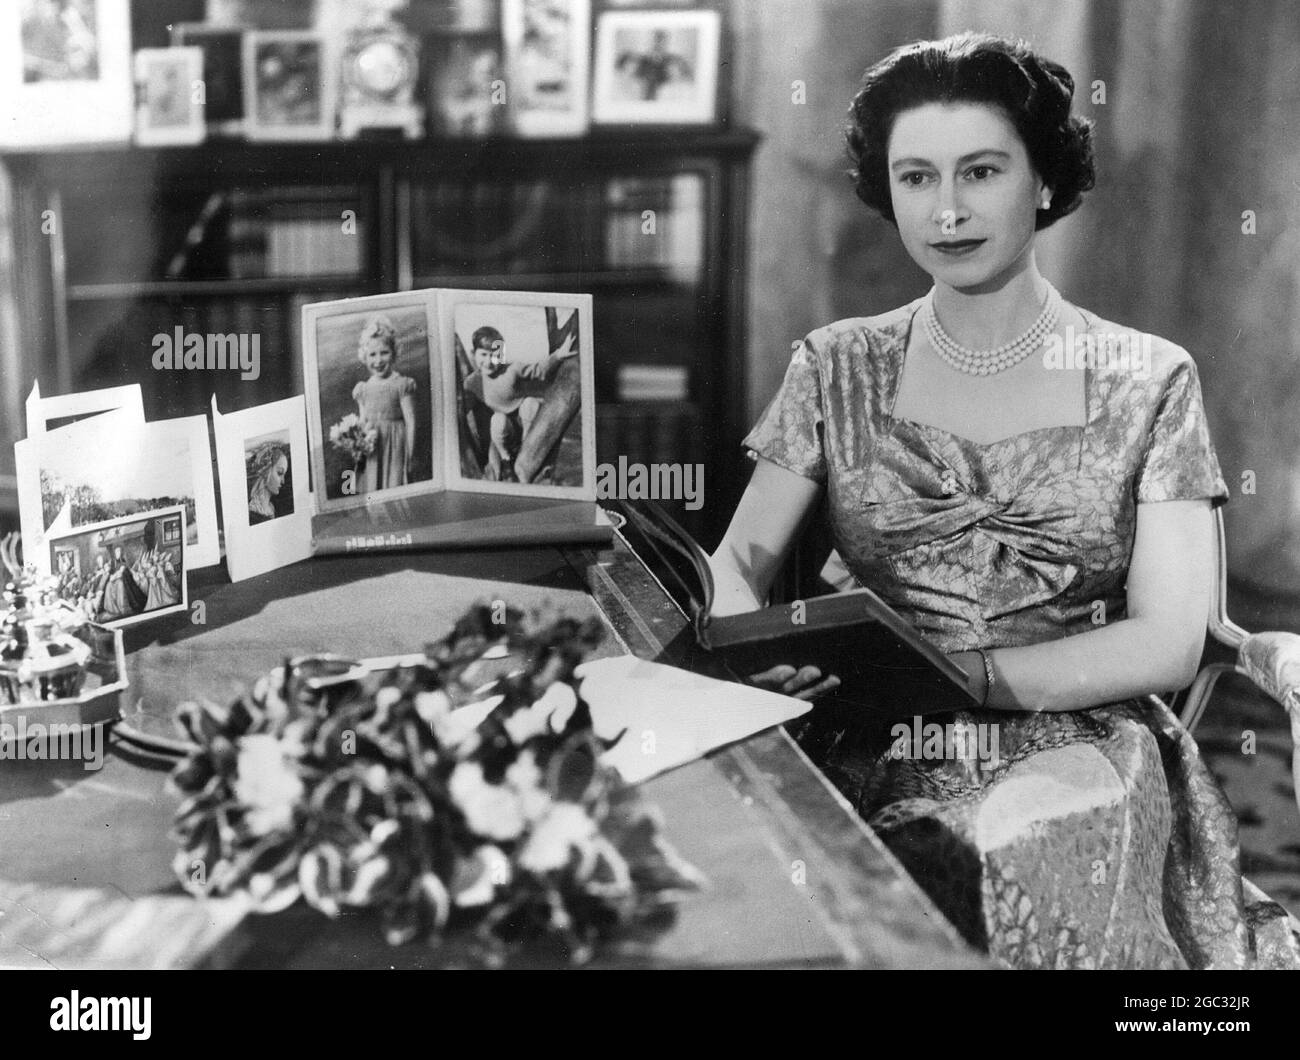 Königin Elizabeth II. Erschien im Fernsehen, um ihre Weihnachtsrede zu halten. Das erste Mal, dass die Rede im Fernsehen ausgestrahlt wurde. Dezember 1957 Stockfoto